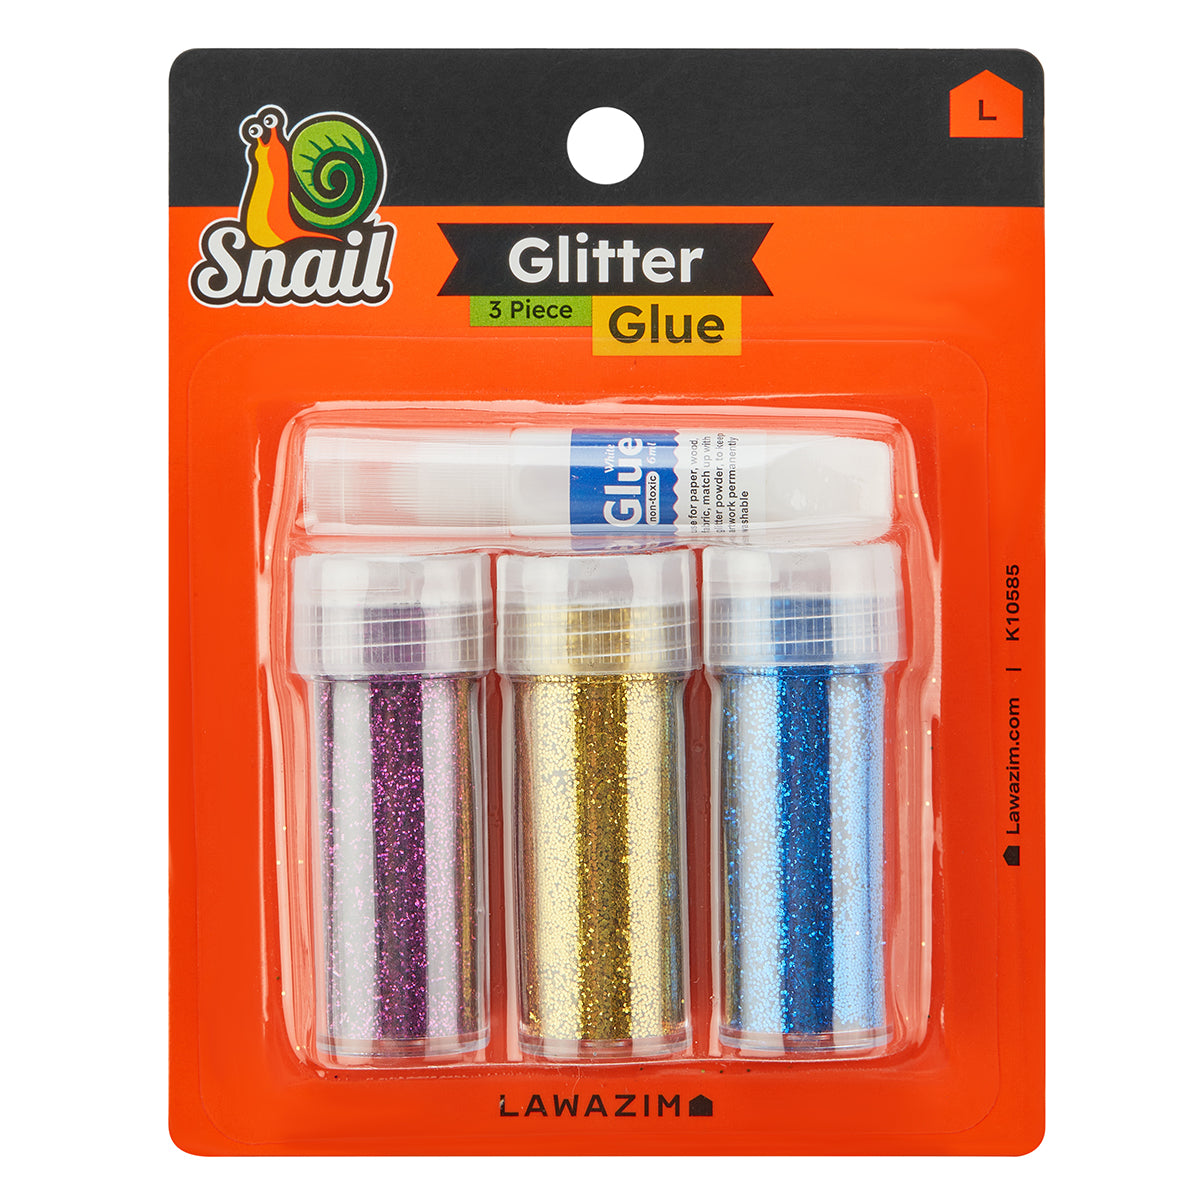 3-Piece Glitter Glue